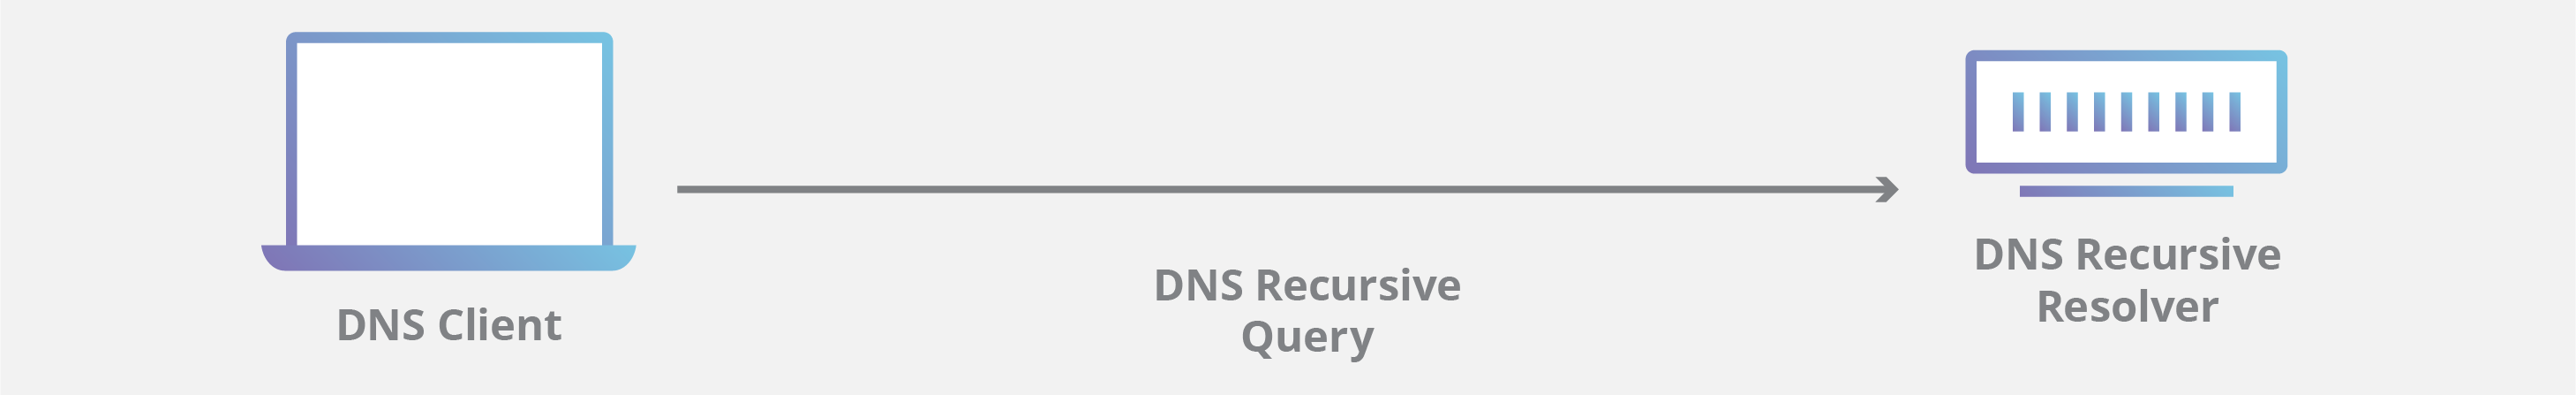 Diagrama de uma consulta de DNS